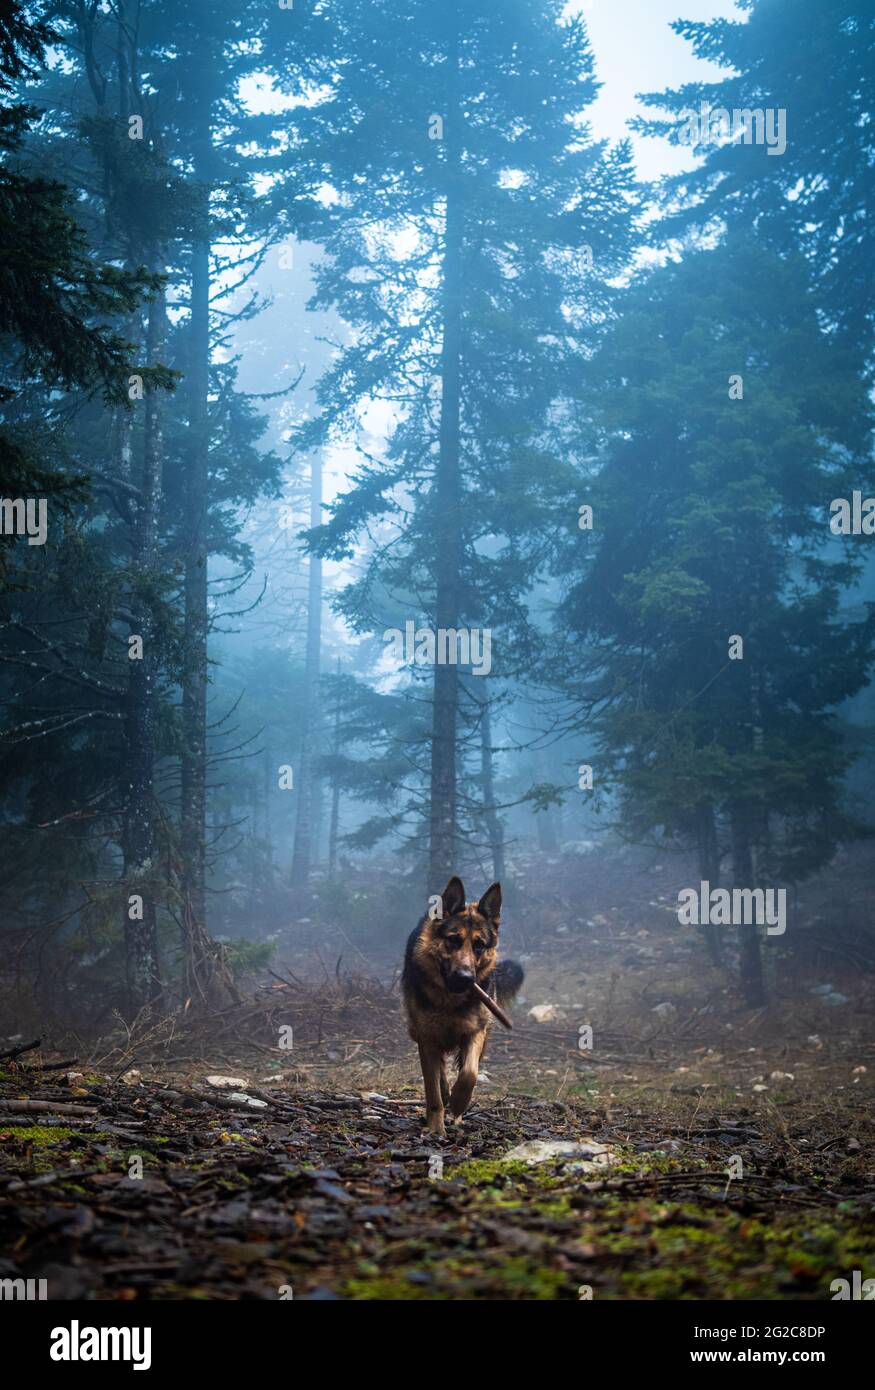 Le berger allemand joue avec le bâton sur la forêt pluvieuse et brumeuse Banque D'Images